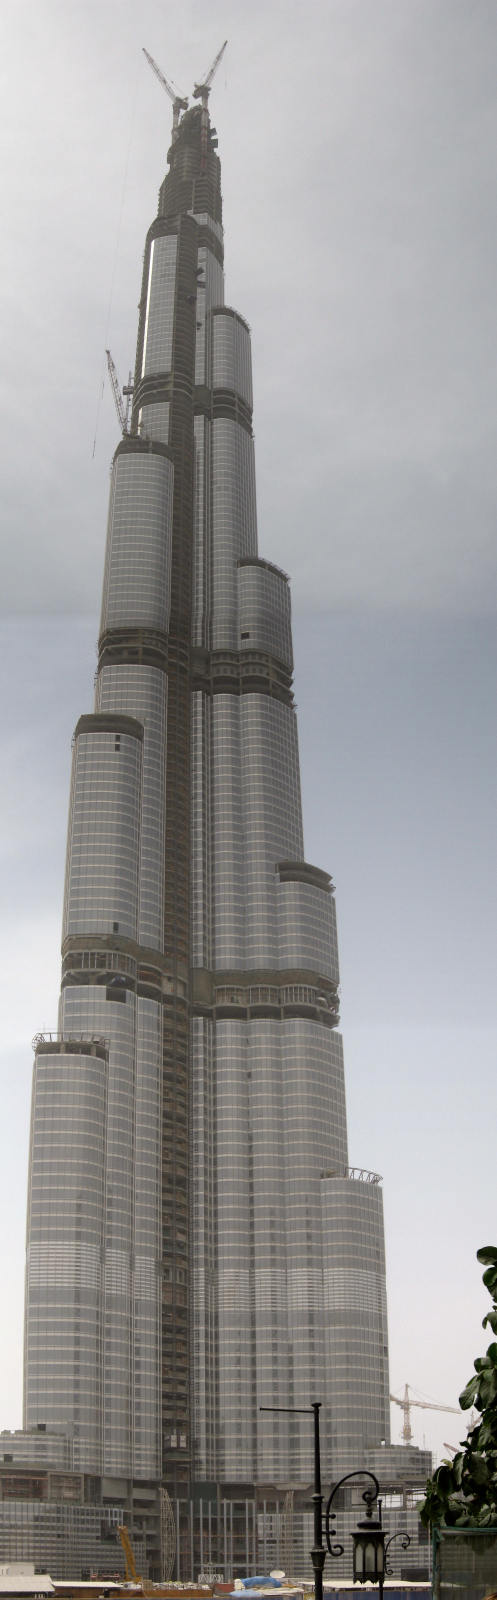 Burj Dubai stał się najwyższą kiedykolwiek wzniesioną konstrukcją